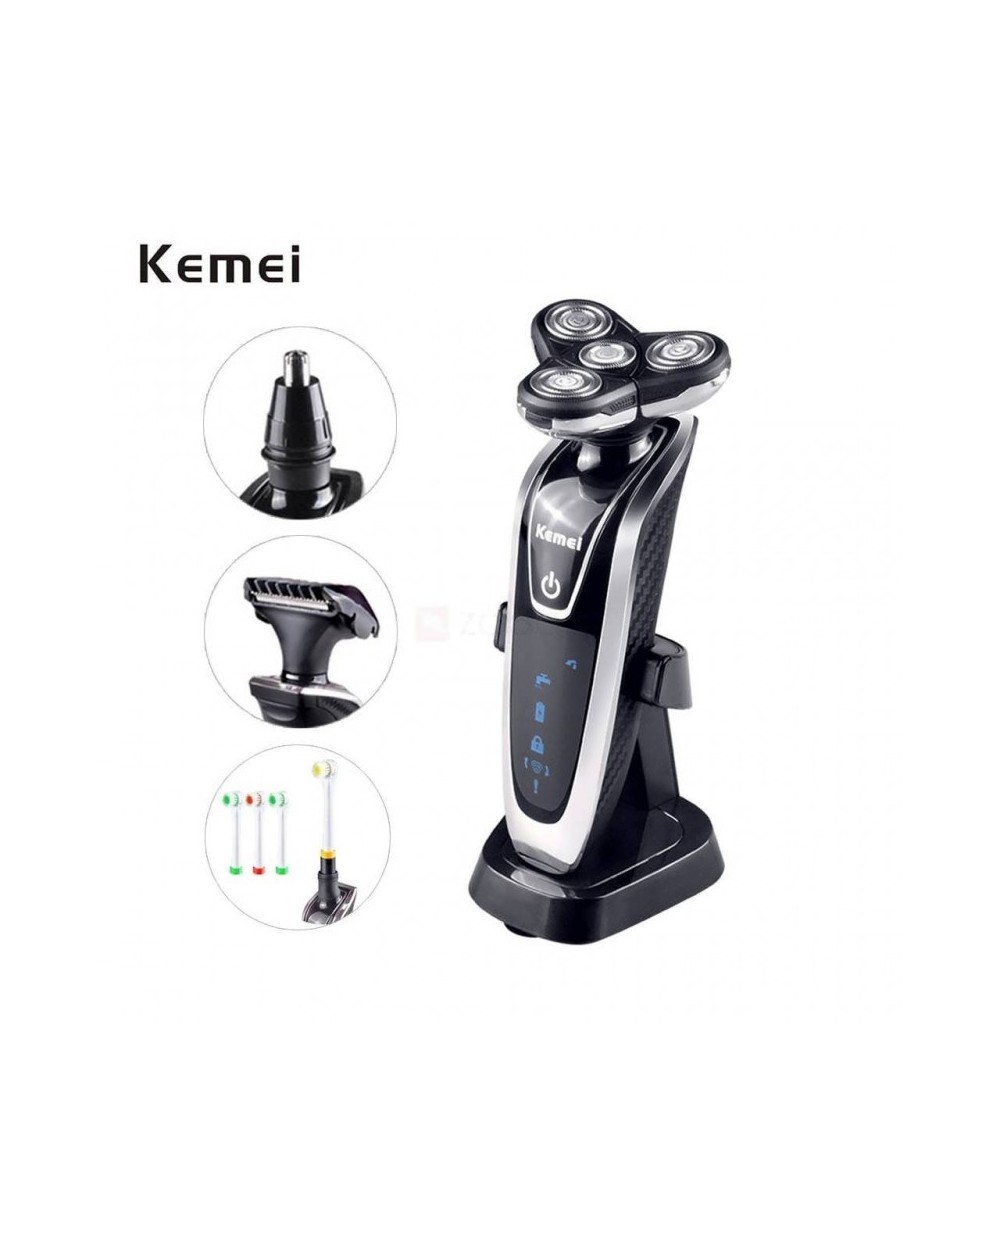 Ξυριστική μηχανή 4D, Περιποίηση μύτης αυτιών, Τριμάρισμα, Οδοντόβουρτσα 4 σε 1 Kemei KM-5181